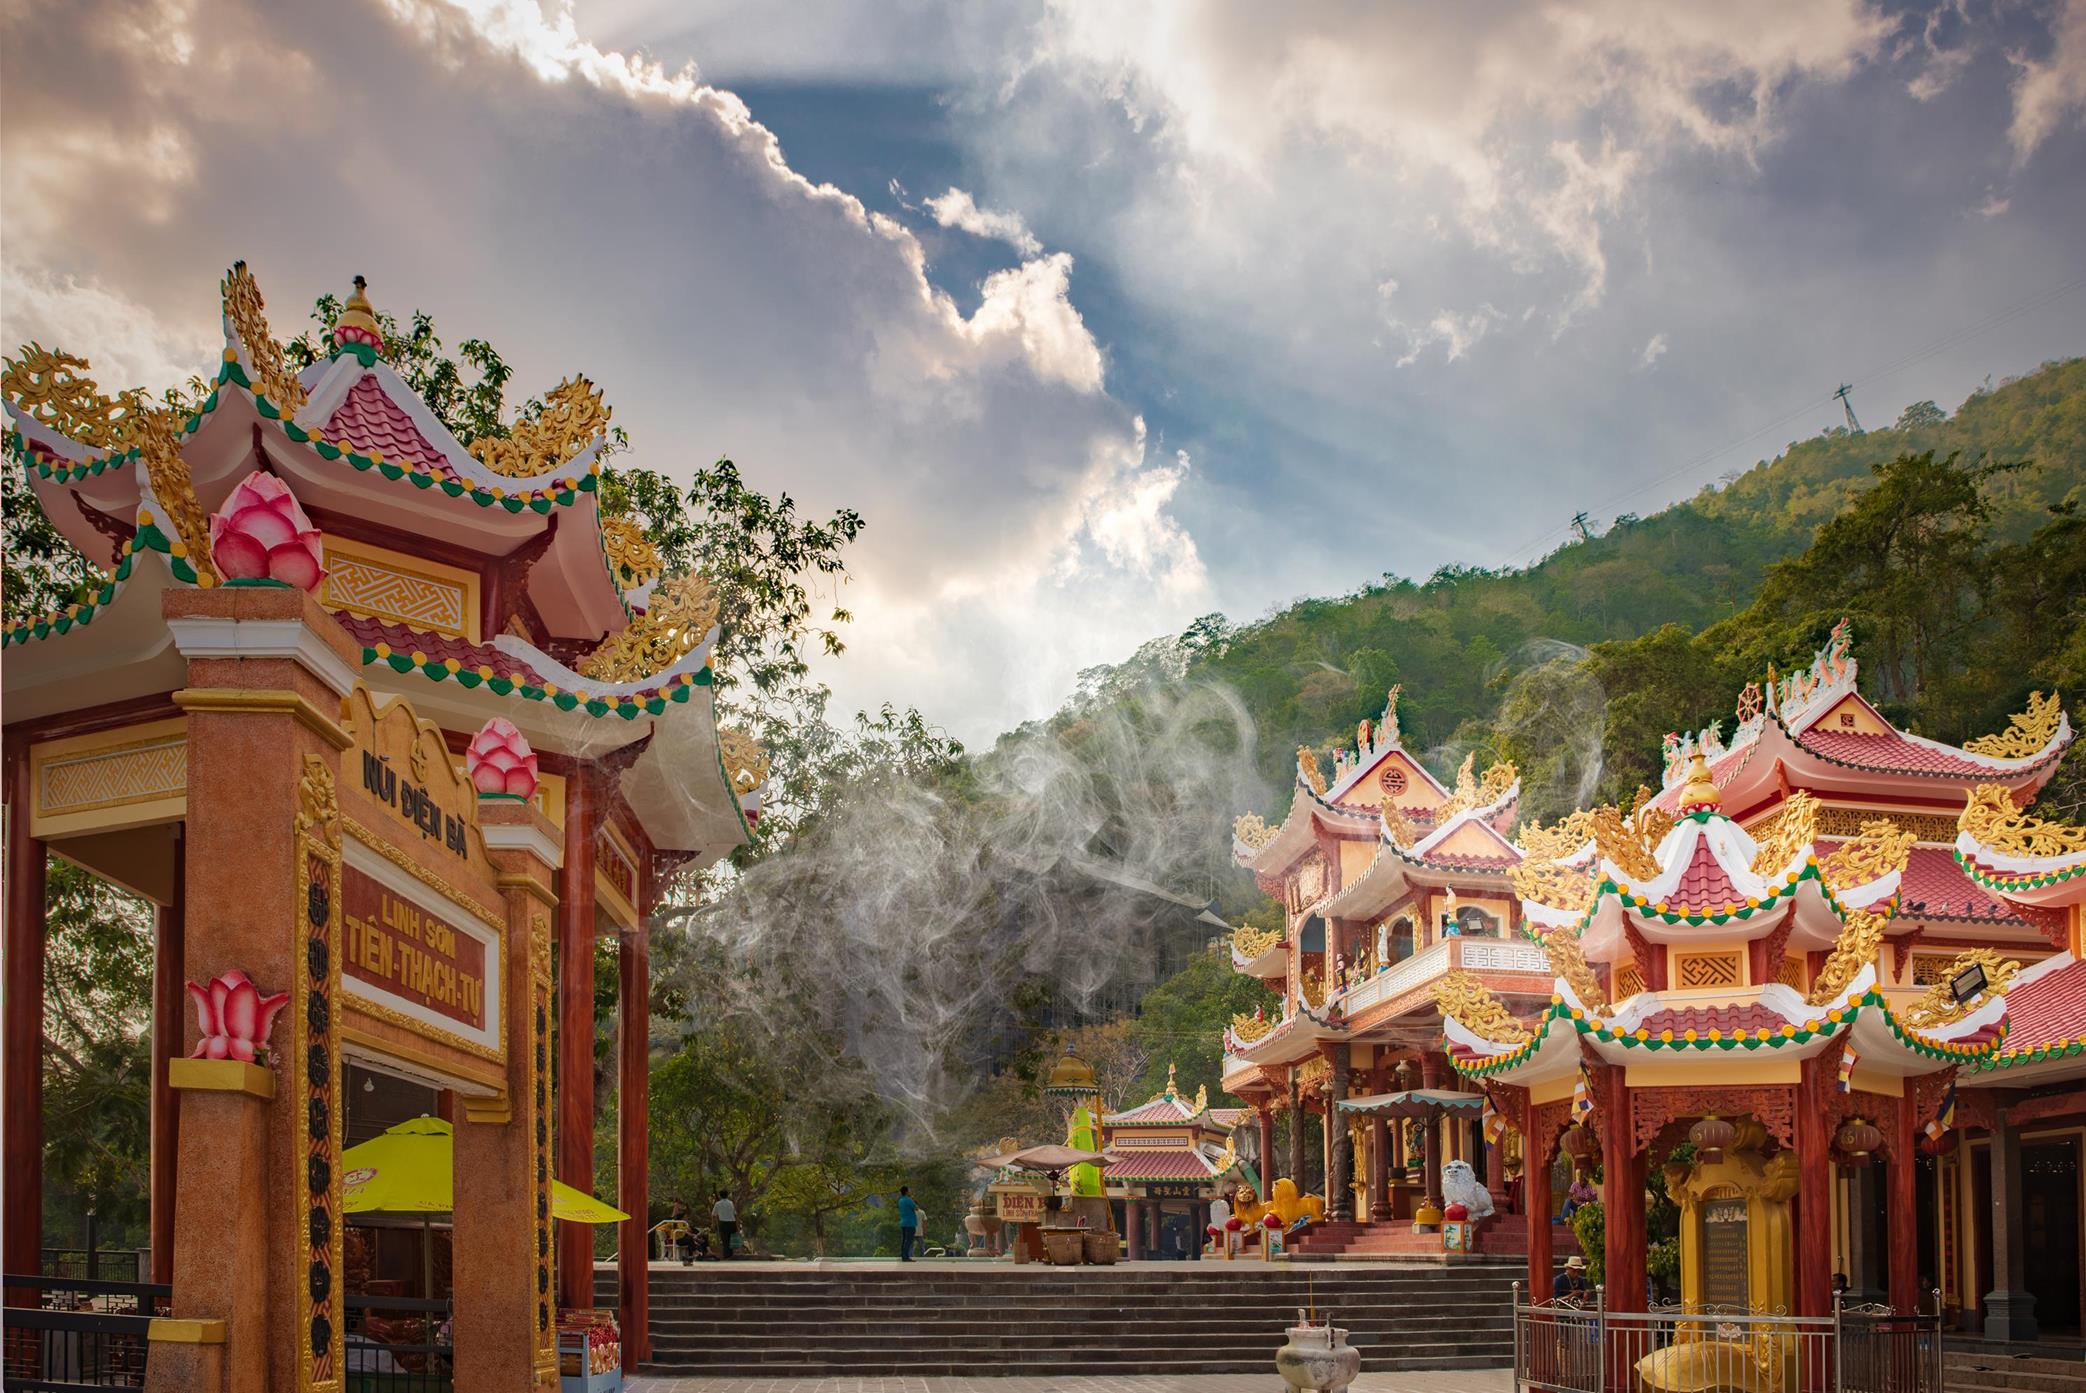 Chiêm ngưỡng quần thể chùa linh thiêng trên núi Bà Đen